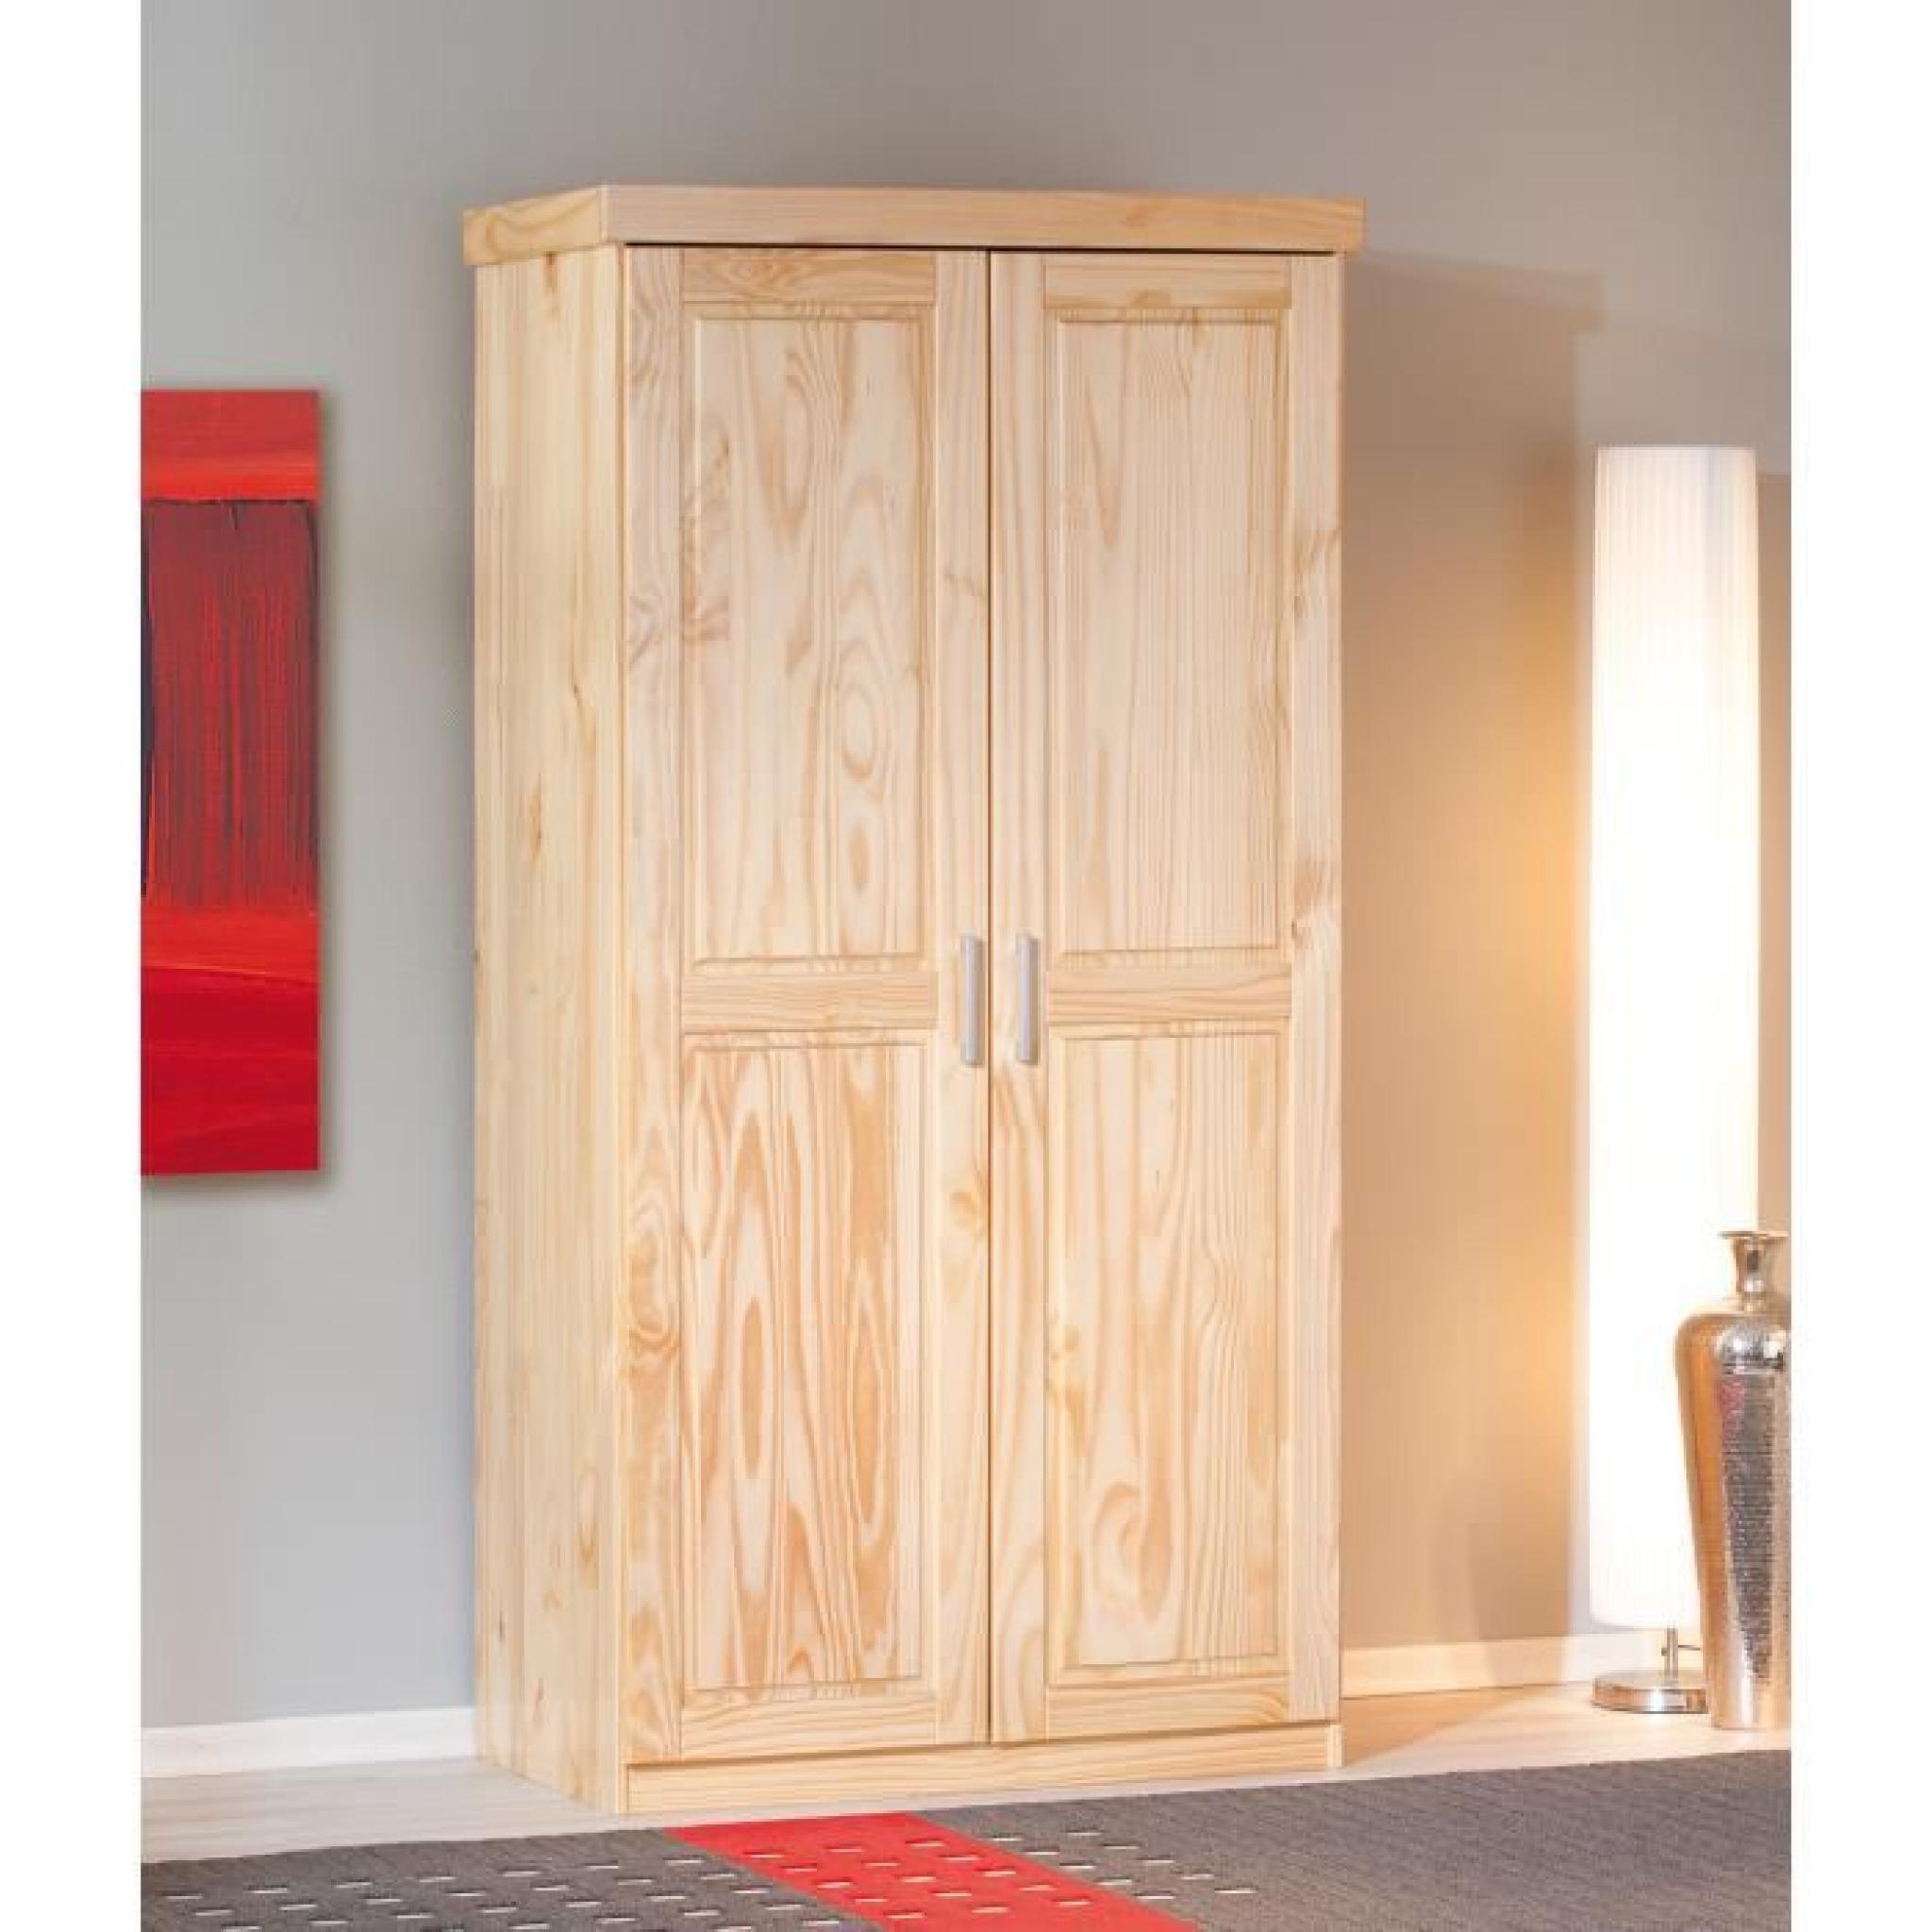 Armoire en bois massif 2 portes  Achat/Vente armoire de chambre pas